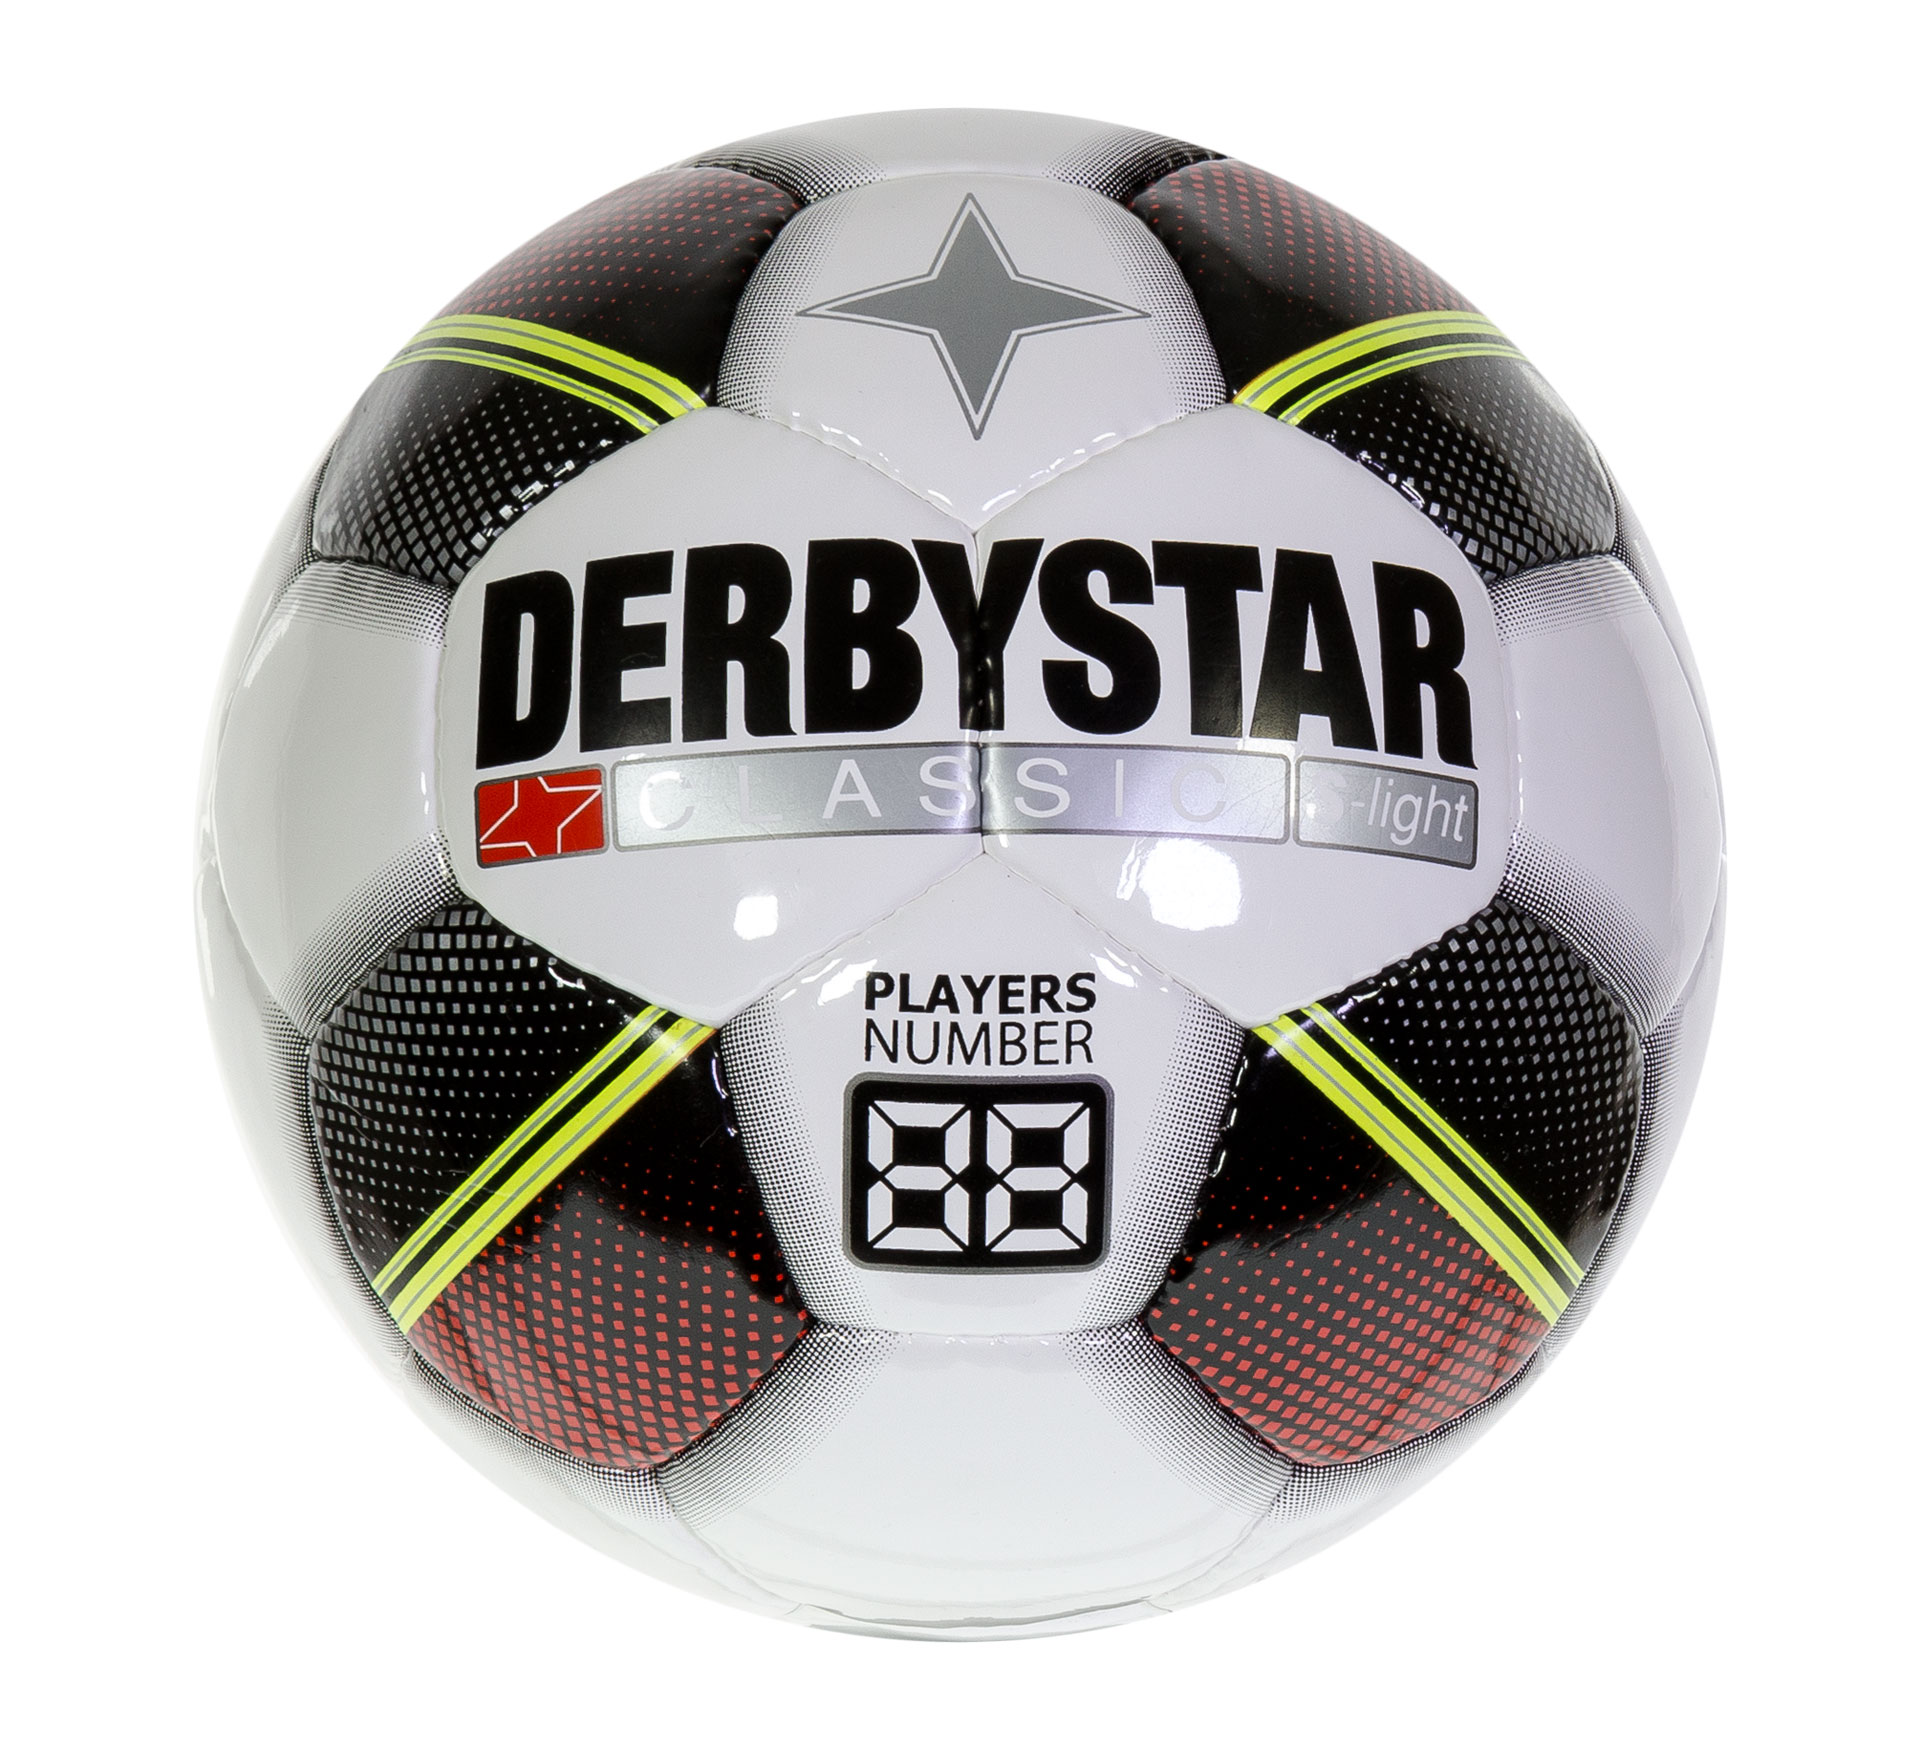 Le ballon de football Derbystar Classic S-Light pour enfants